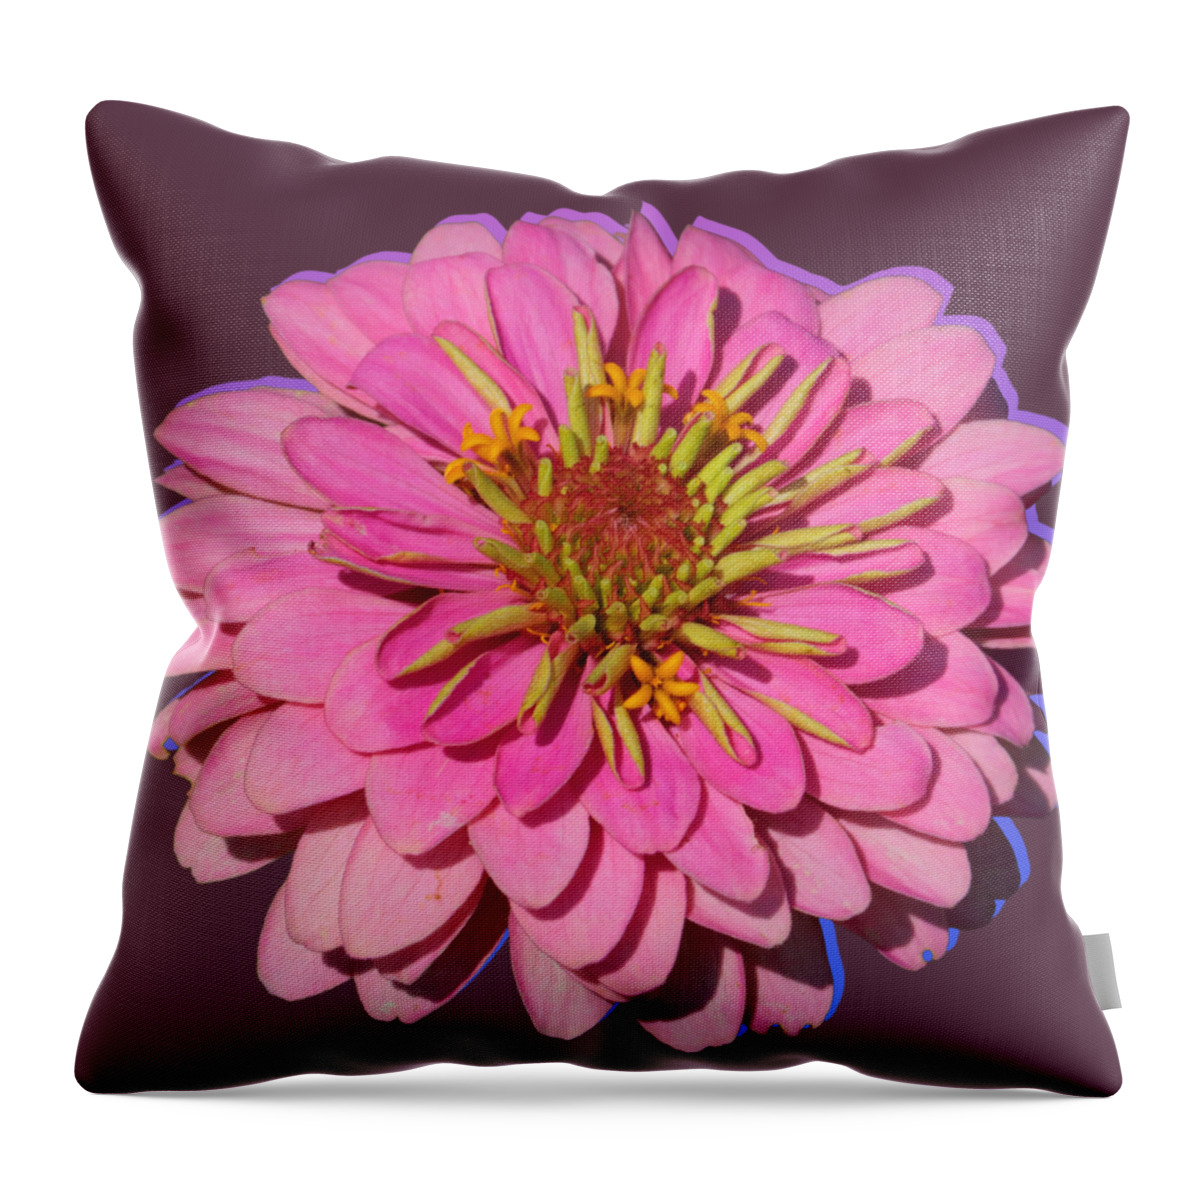 Pink Zinnia Throw Pillow featuring the photograph Flower Power - Pink Zinnia by Carol Groenen